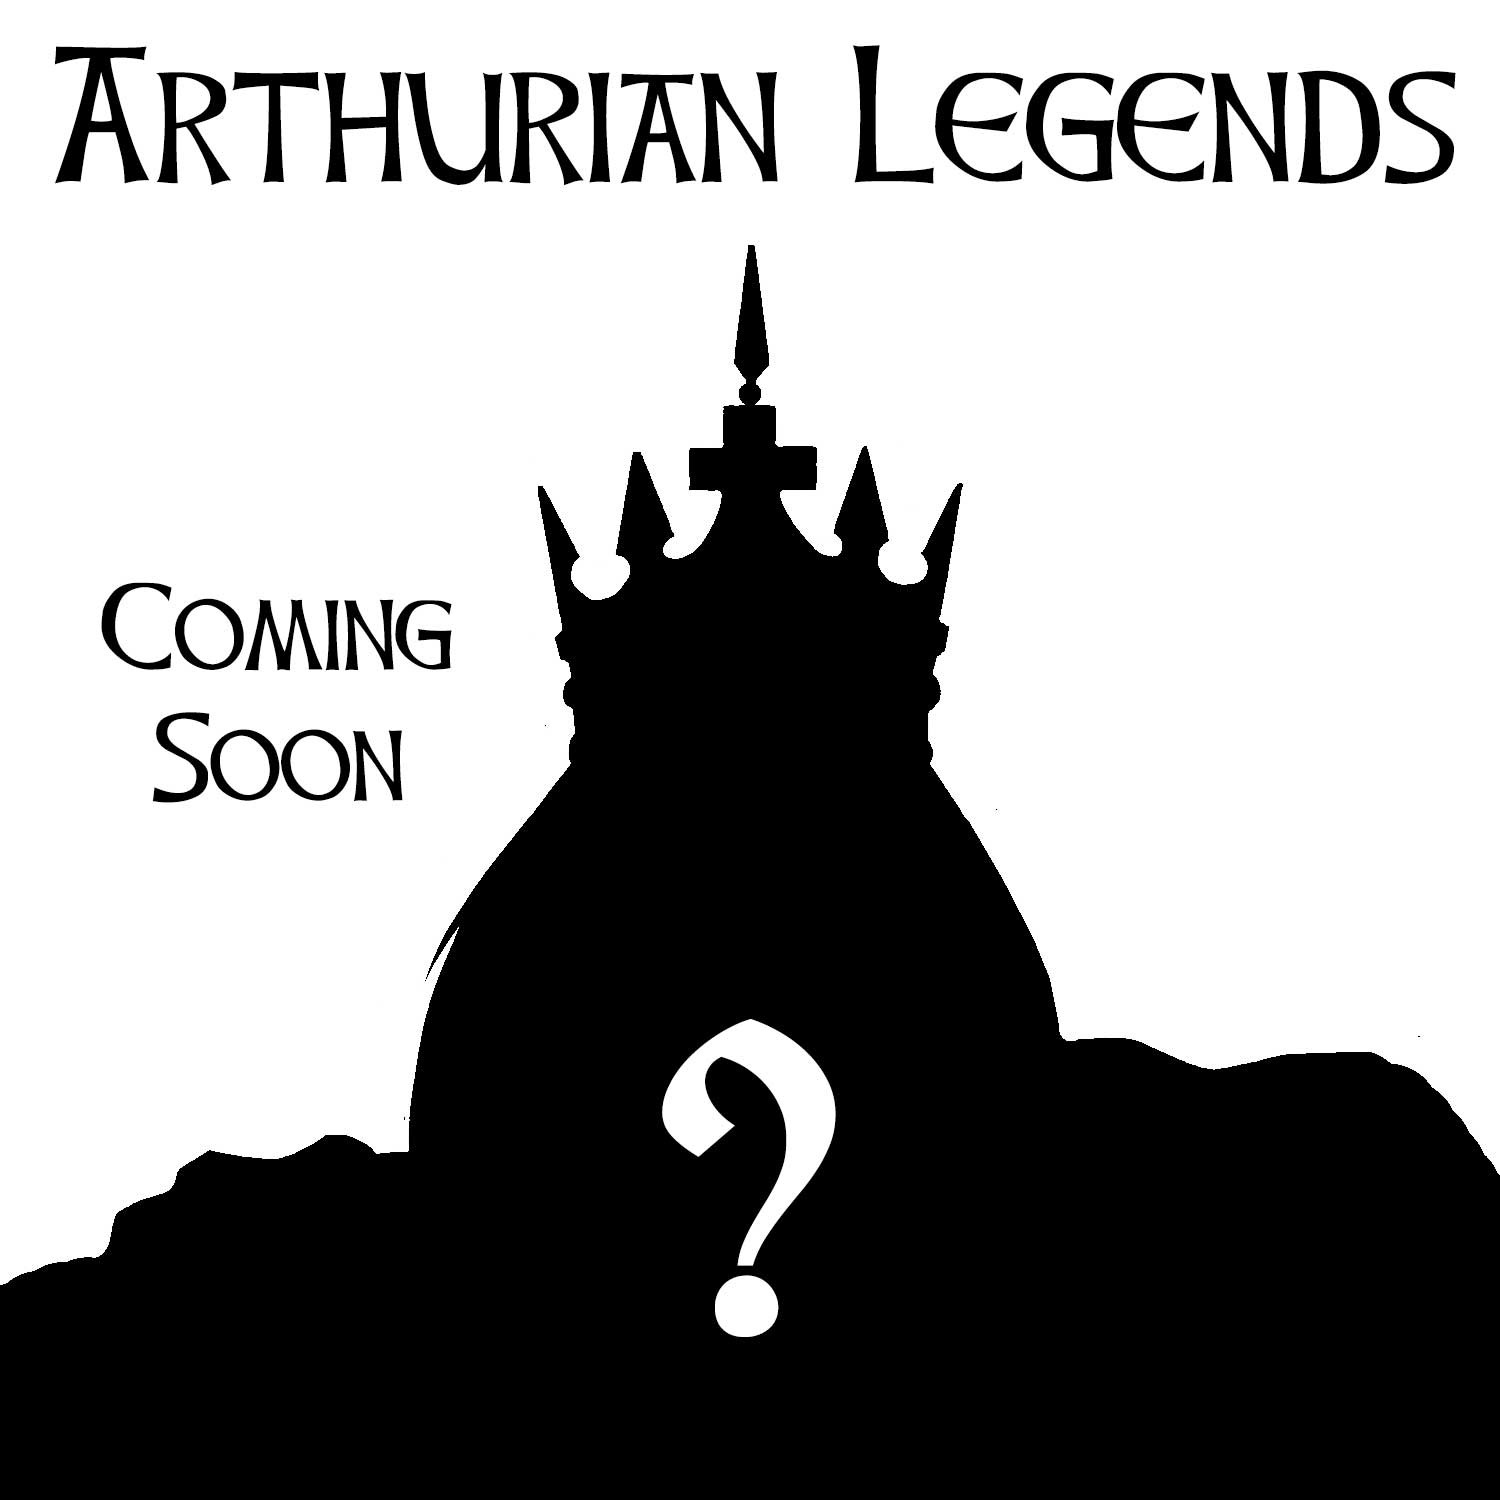 Arthurian legends header wxakb6